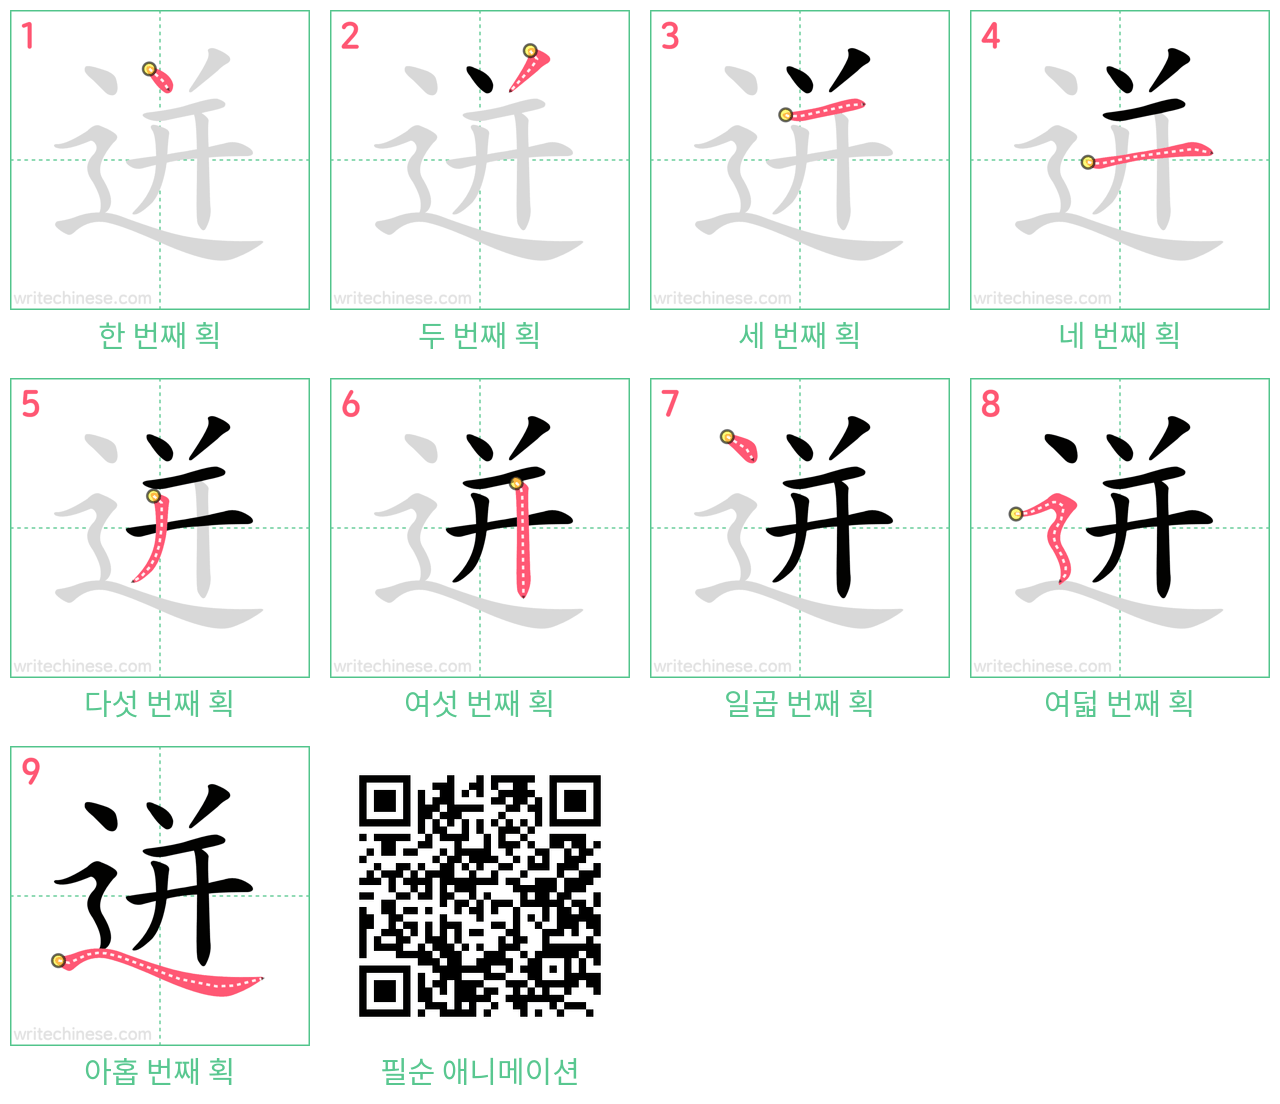 迸 step-by-step stroke order diagrams